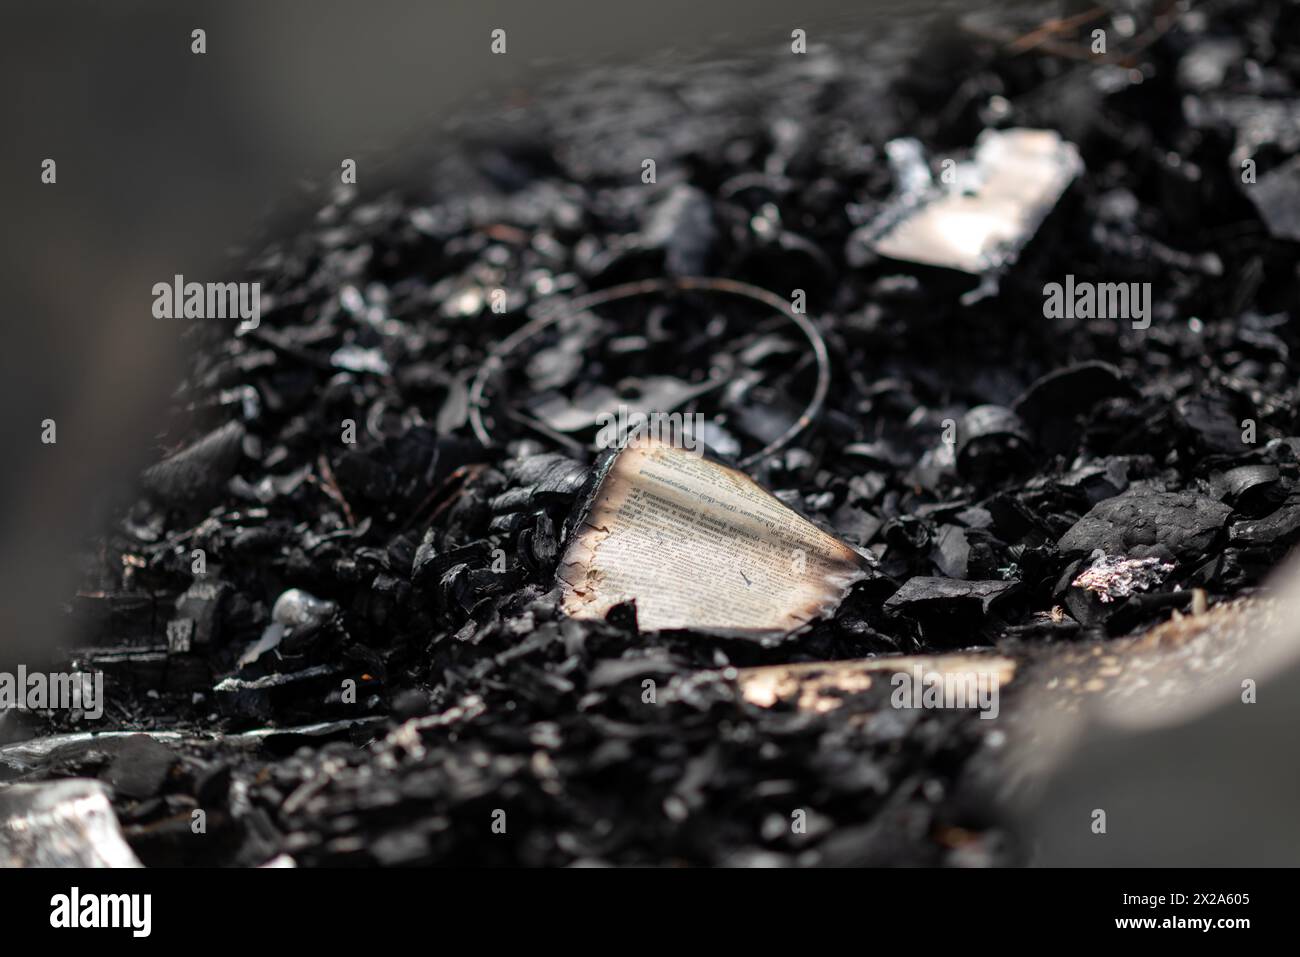 Un livre brûlé sur un tas de cendres, les restes de pages dans une maison brûlée Banque D'Images